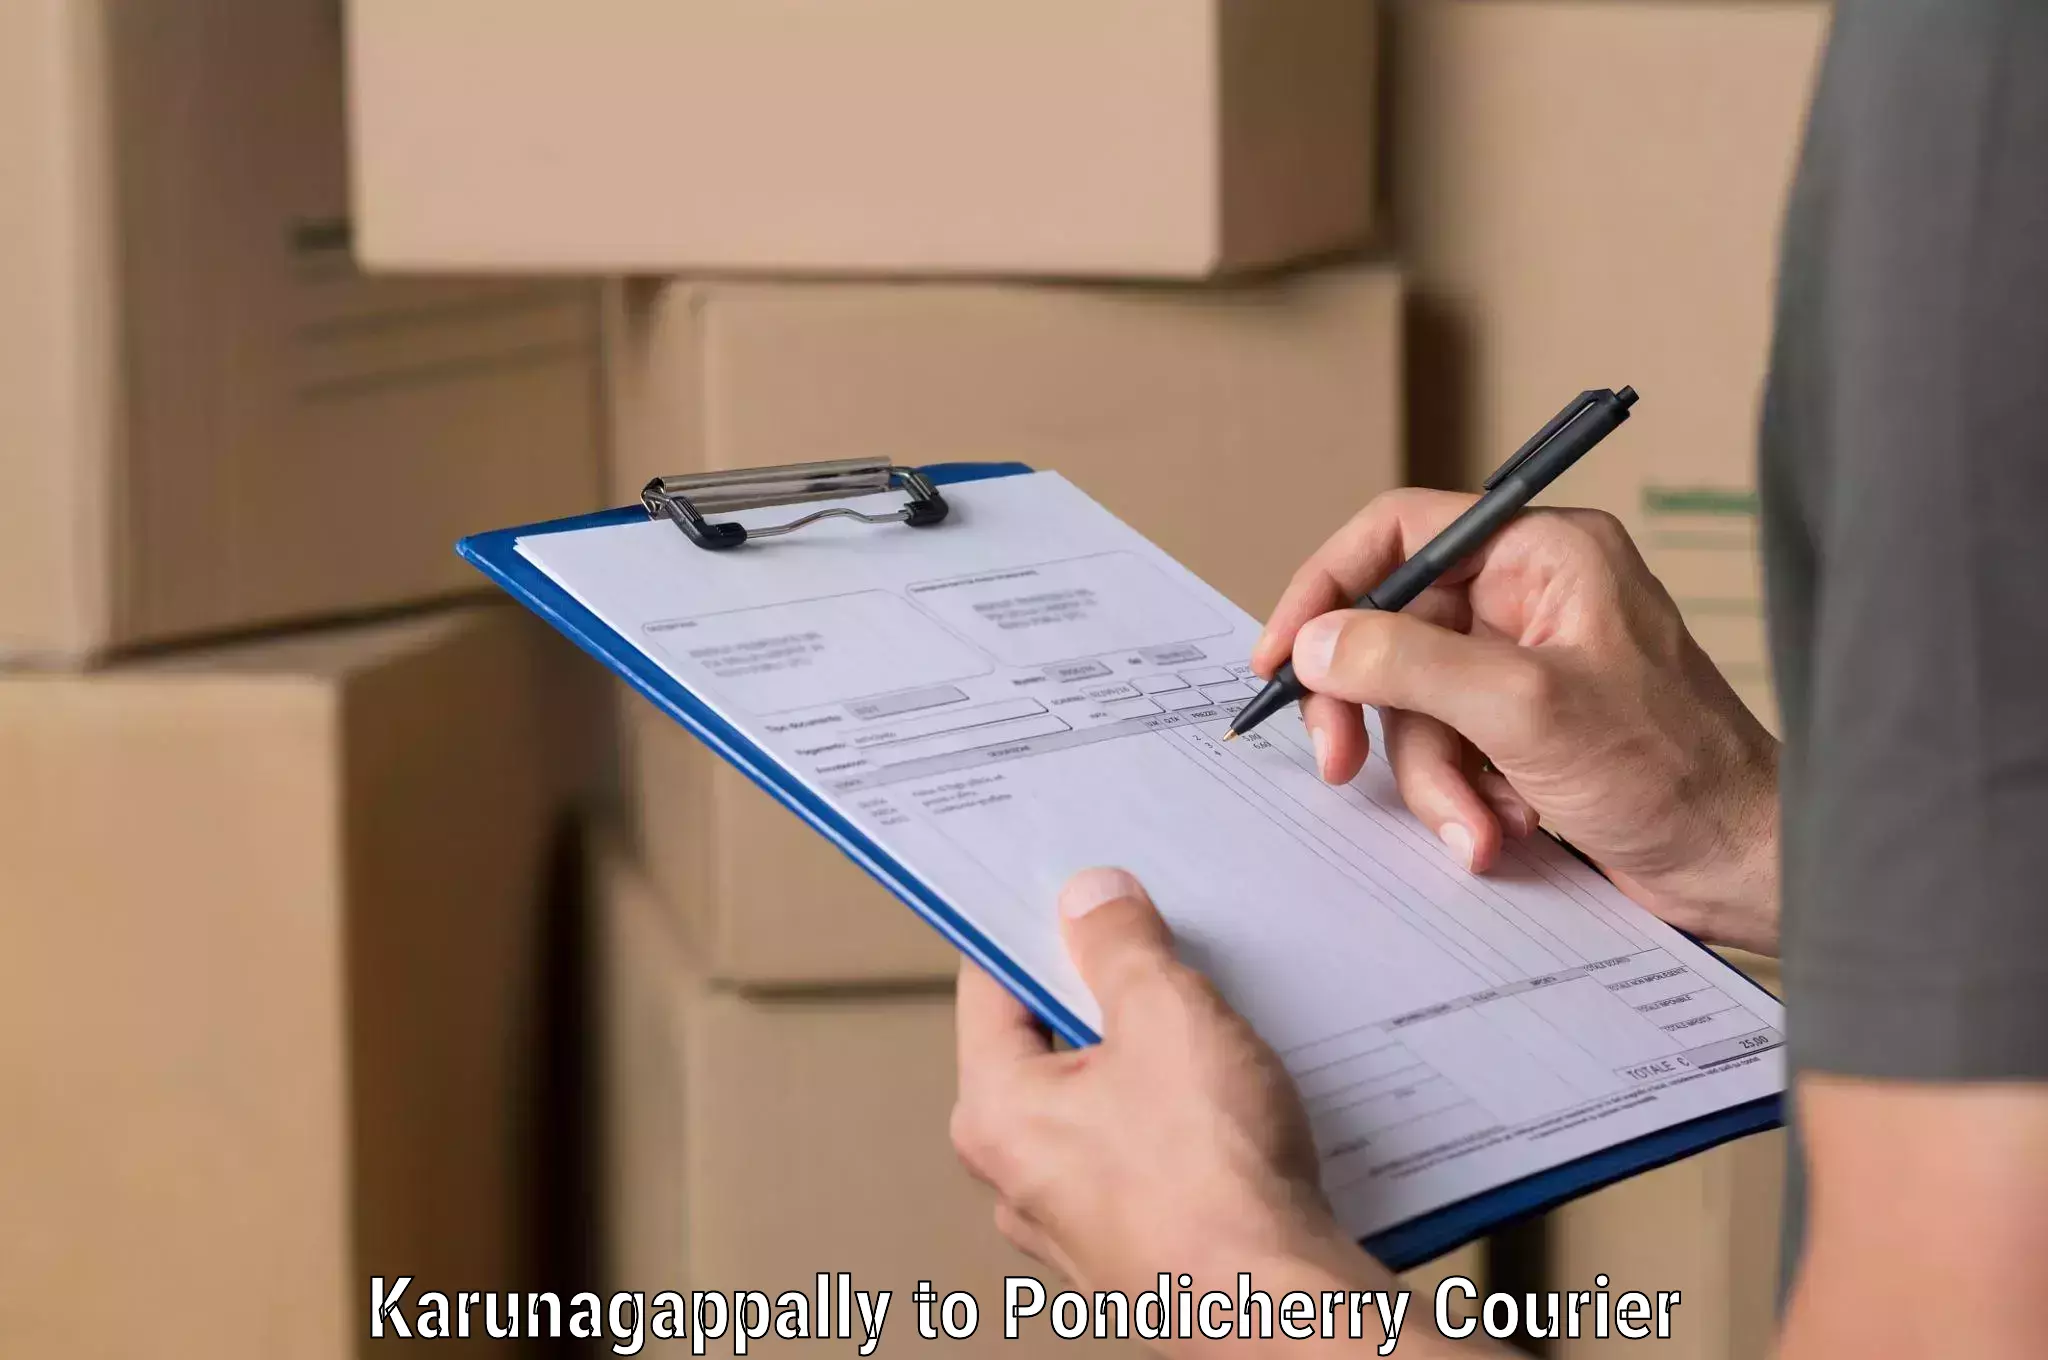 Delivery service partnership Karunagappally to Pondicherry